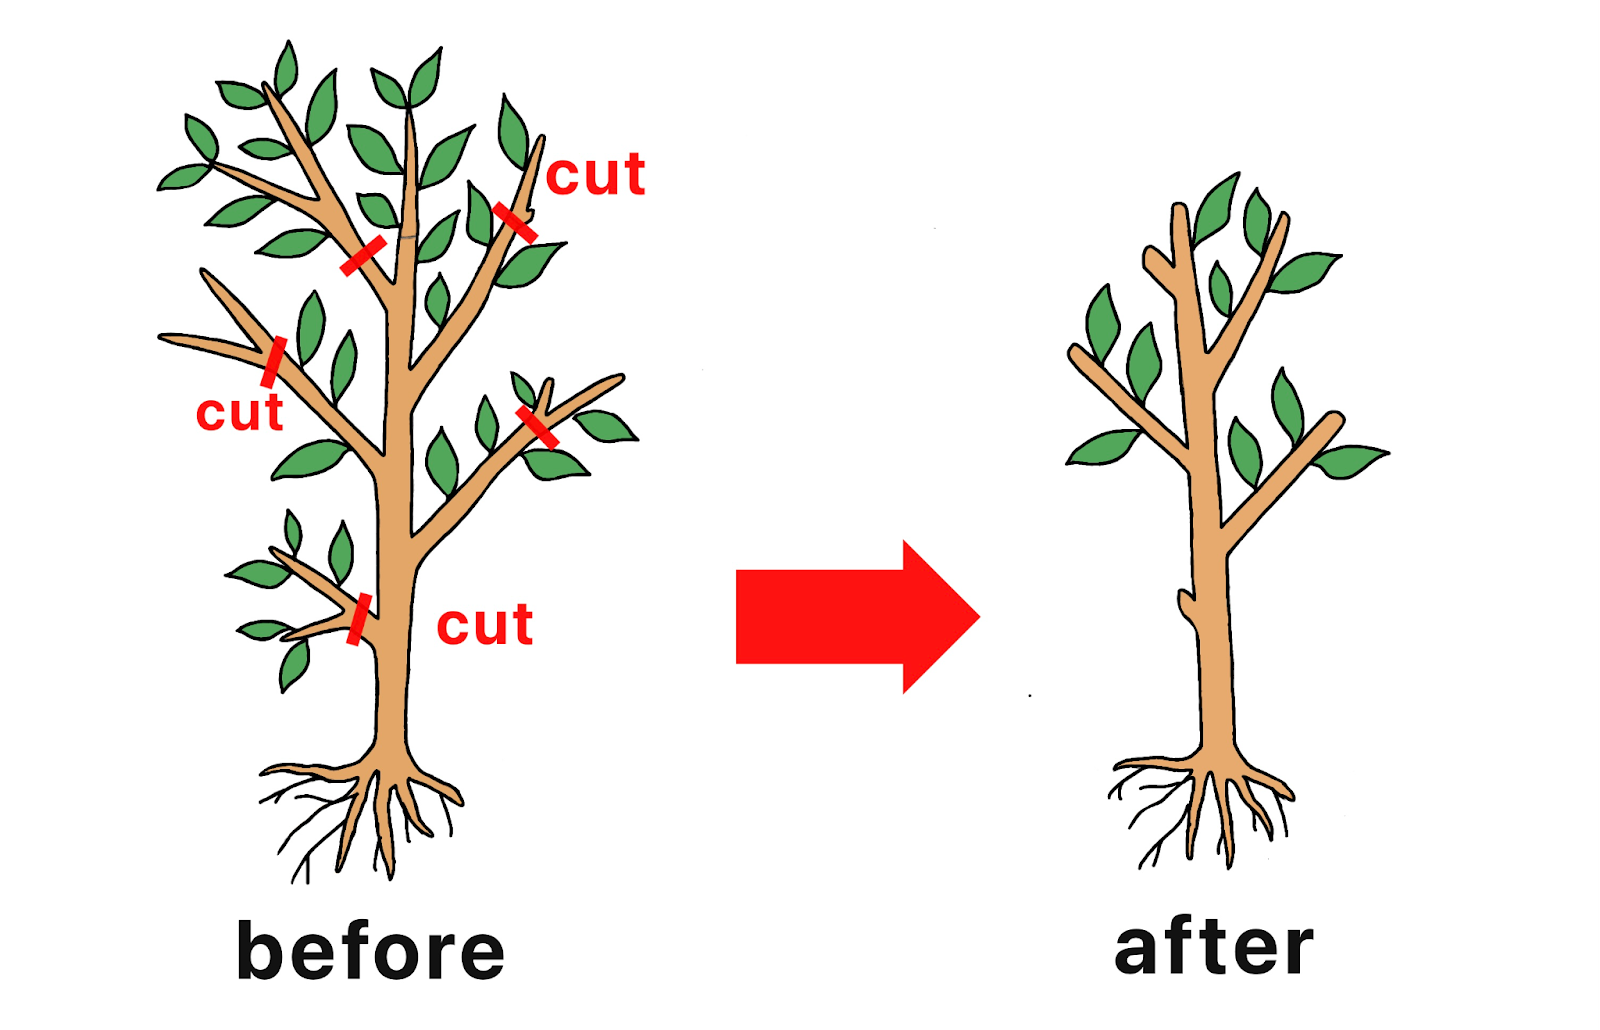 残った根の量と葉・茎 or 幹・枝のバランスを考慮して、元気な部分も剪定する必要があると説明している